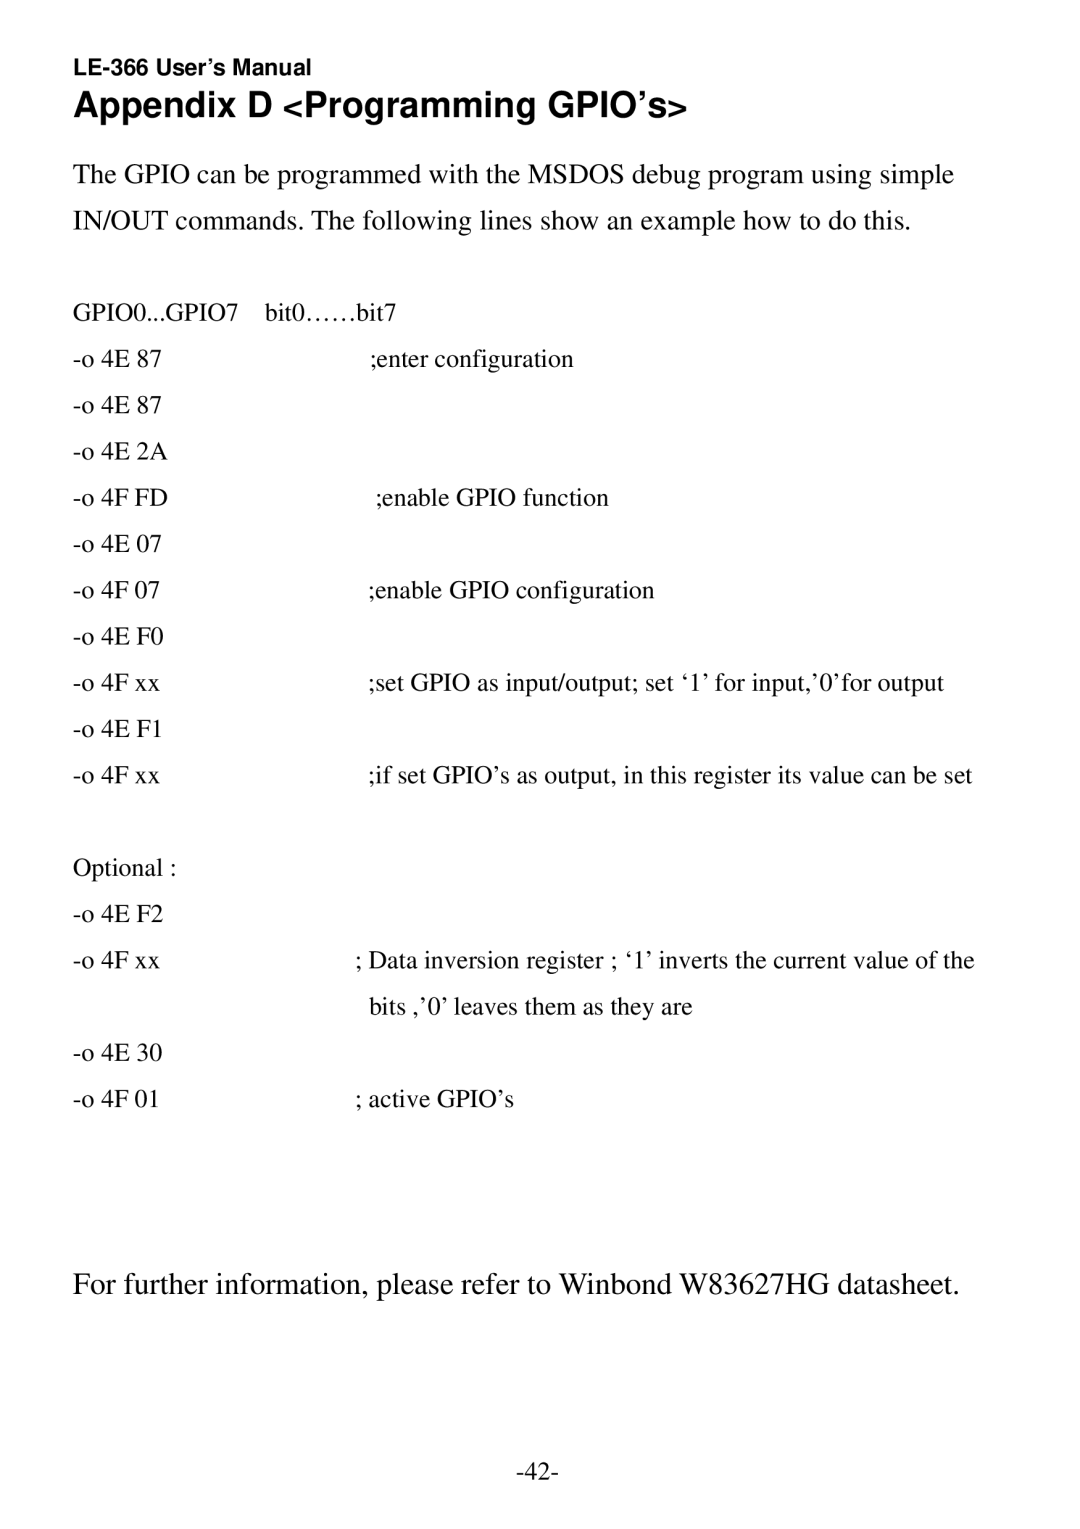 AMD LE-366 user manual Appendix D Programming GPIO’s, GPIO0...GPIO7 